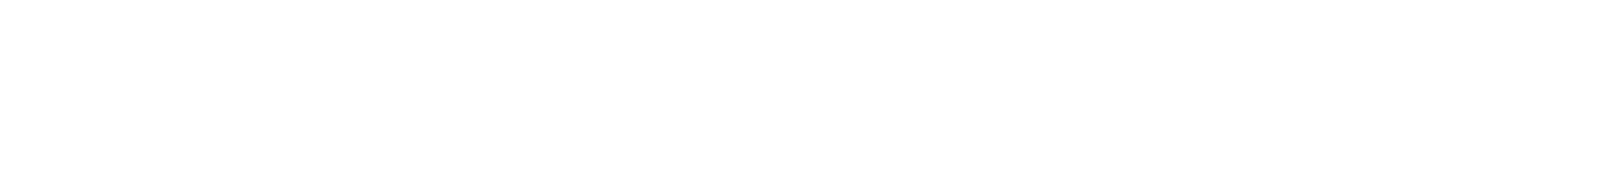 Ascential logo large for dark backgrounds (transparent PNG)